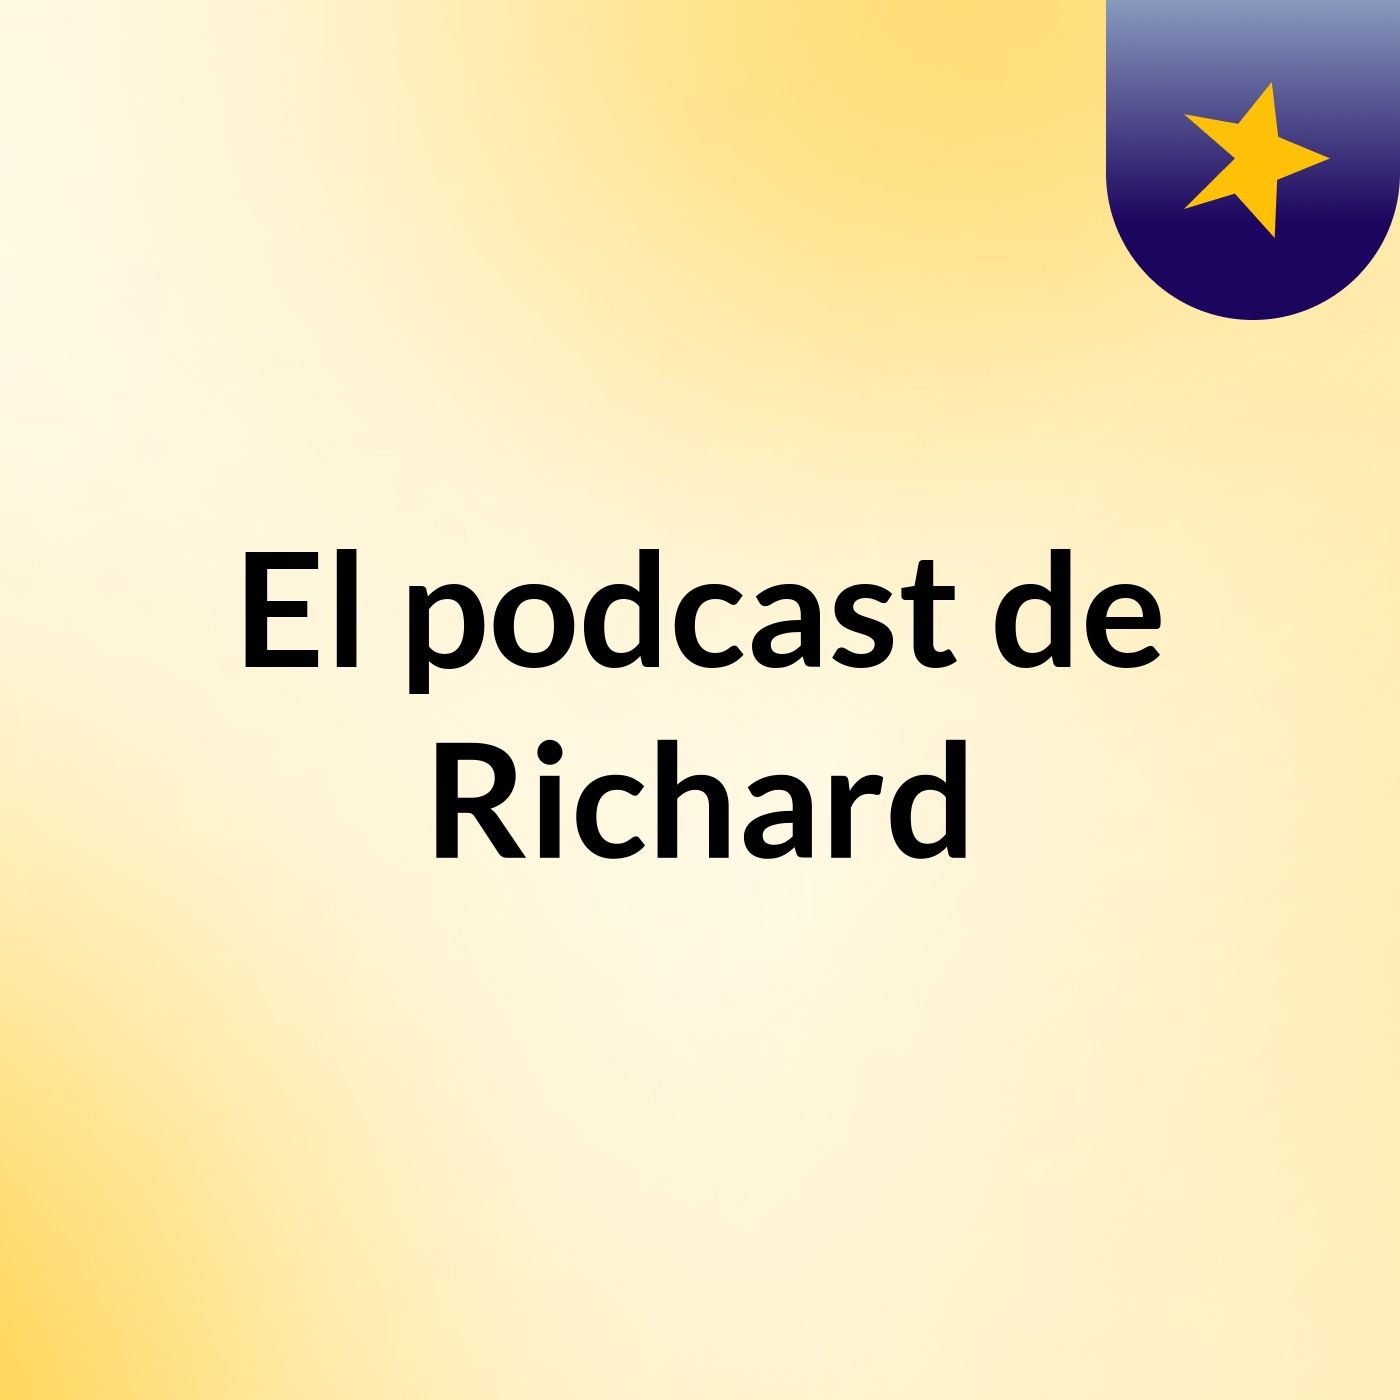 El podcast de Richard